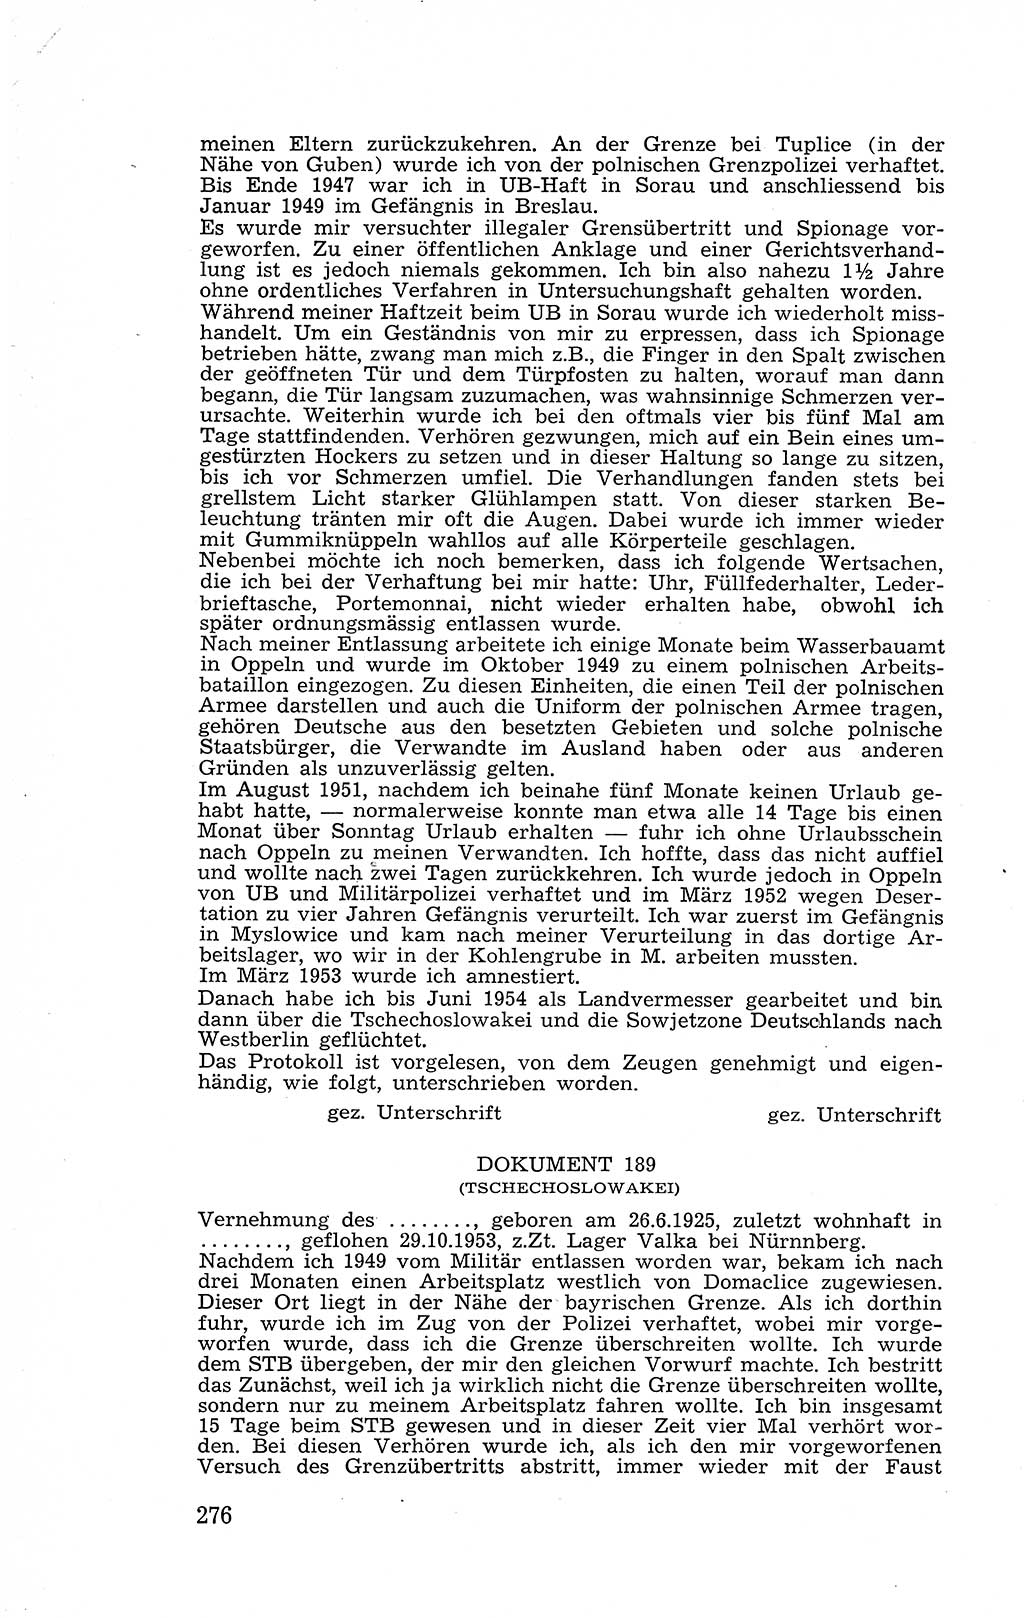 Recht in Fesseln, Dokumente, Internationale Juristen-Kommission [Bundesrepublik Deutschland (BRD)] 1955, Seite 276 (R. Dok. IJK BRD 1955, S. 276)